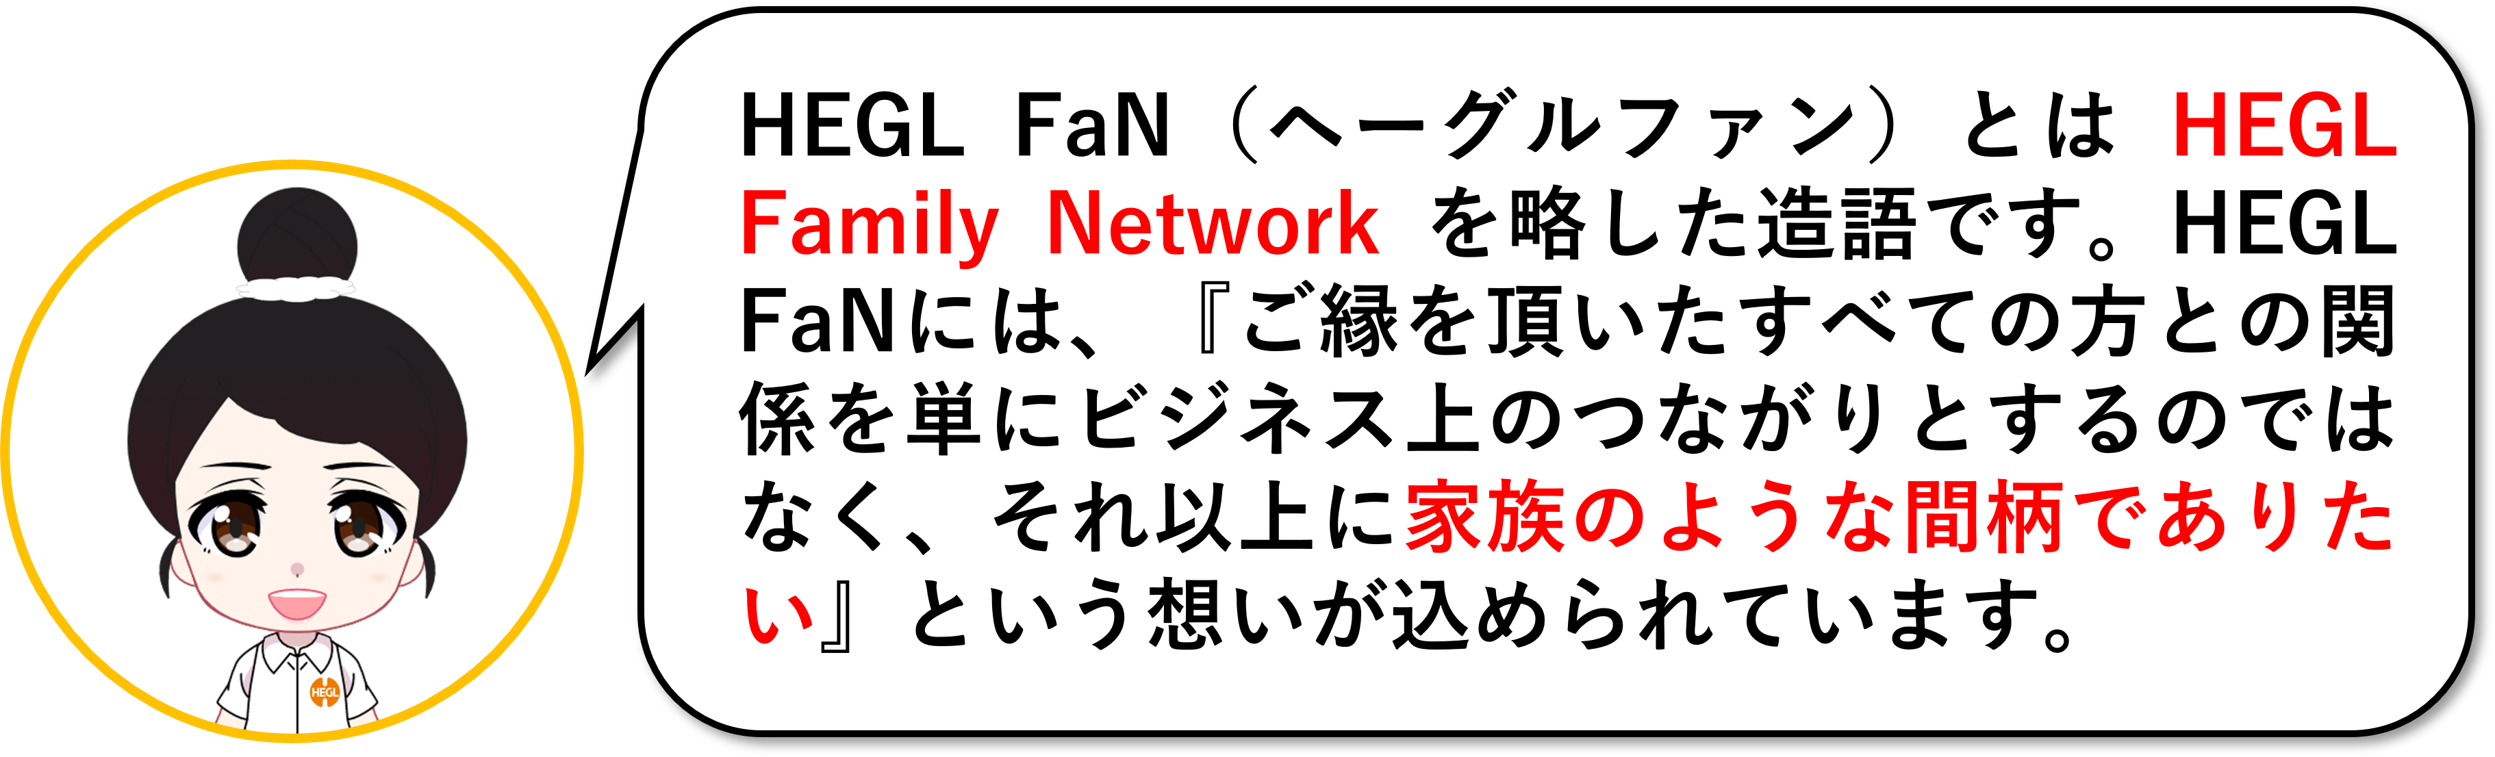 HEGL FaN（ヘーグルファン）とはHEGL Family Networkを略した造語です。HEGL Fanには「ご縁を頂いたすべての方との関係を単にビジネス上の繋がりとするのではなく、それ以上に「家族のような間柄でありたい」という想いが込められています。